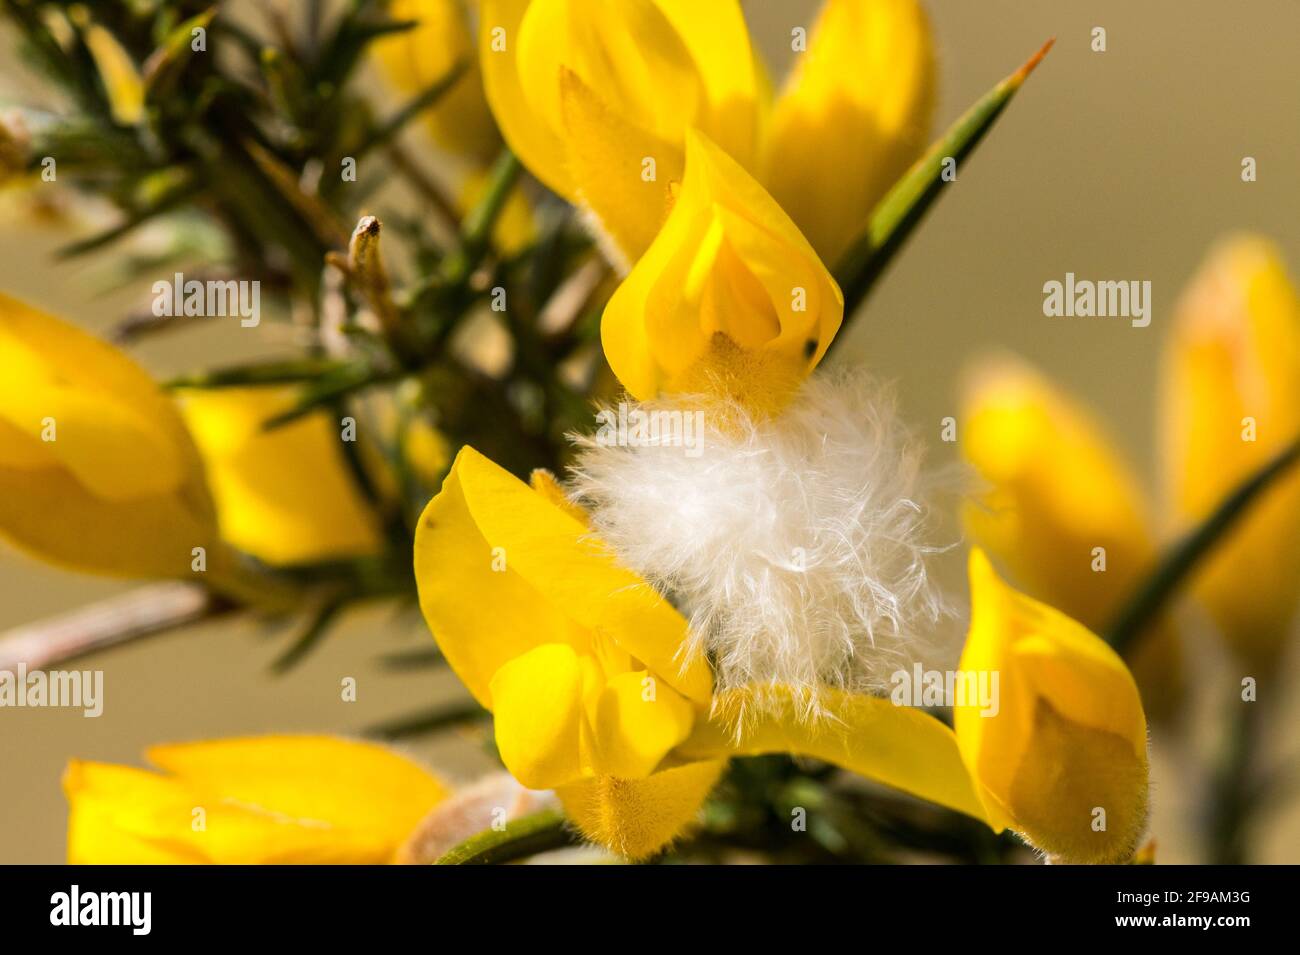 Petite plume blanche prise dans la pointe de gorge en fleur Banque D'Images